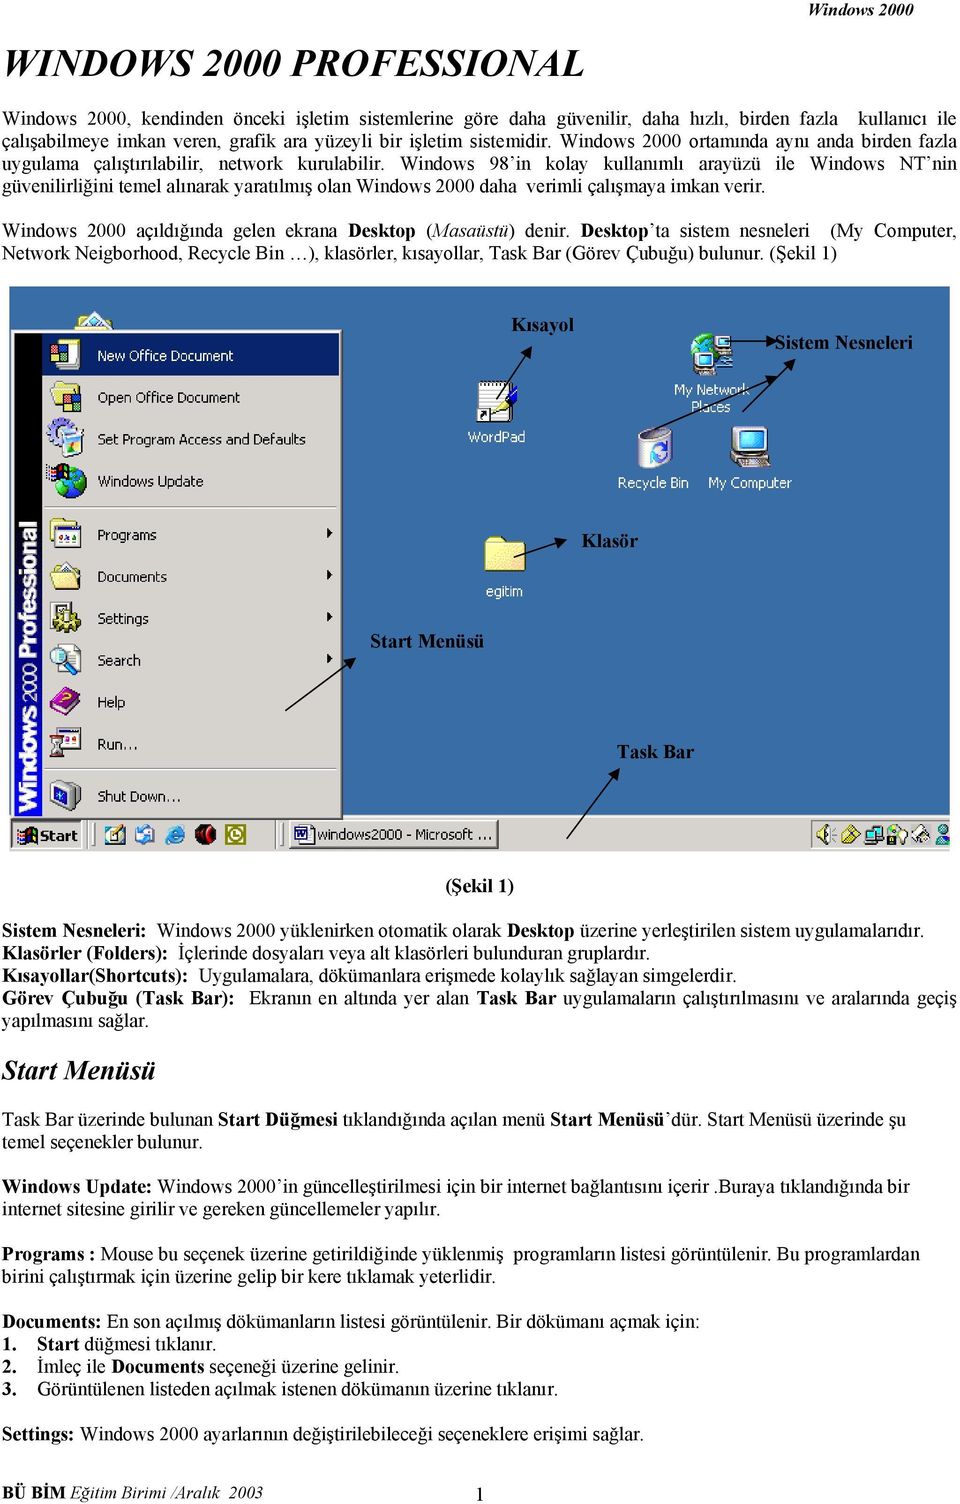 Windows 98 in kolay kullanımlı arayüzü ile Windows NT nin güvenilirliğini temel alınarak yaratılmış olan Windows 2000 daha verimli çalışmaya imkan verir.